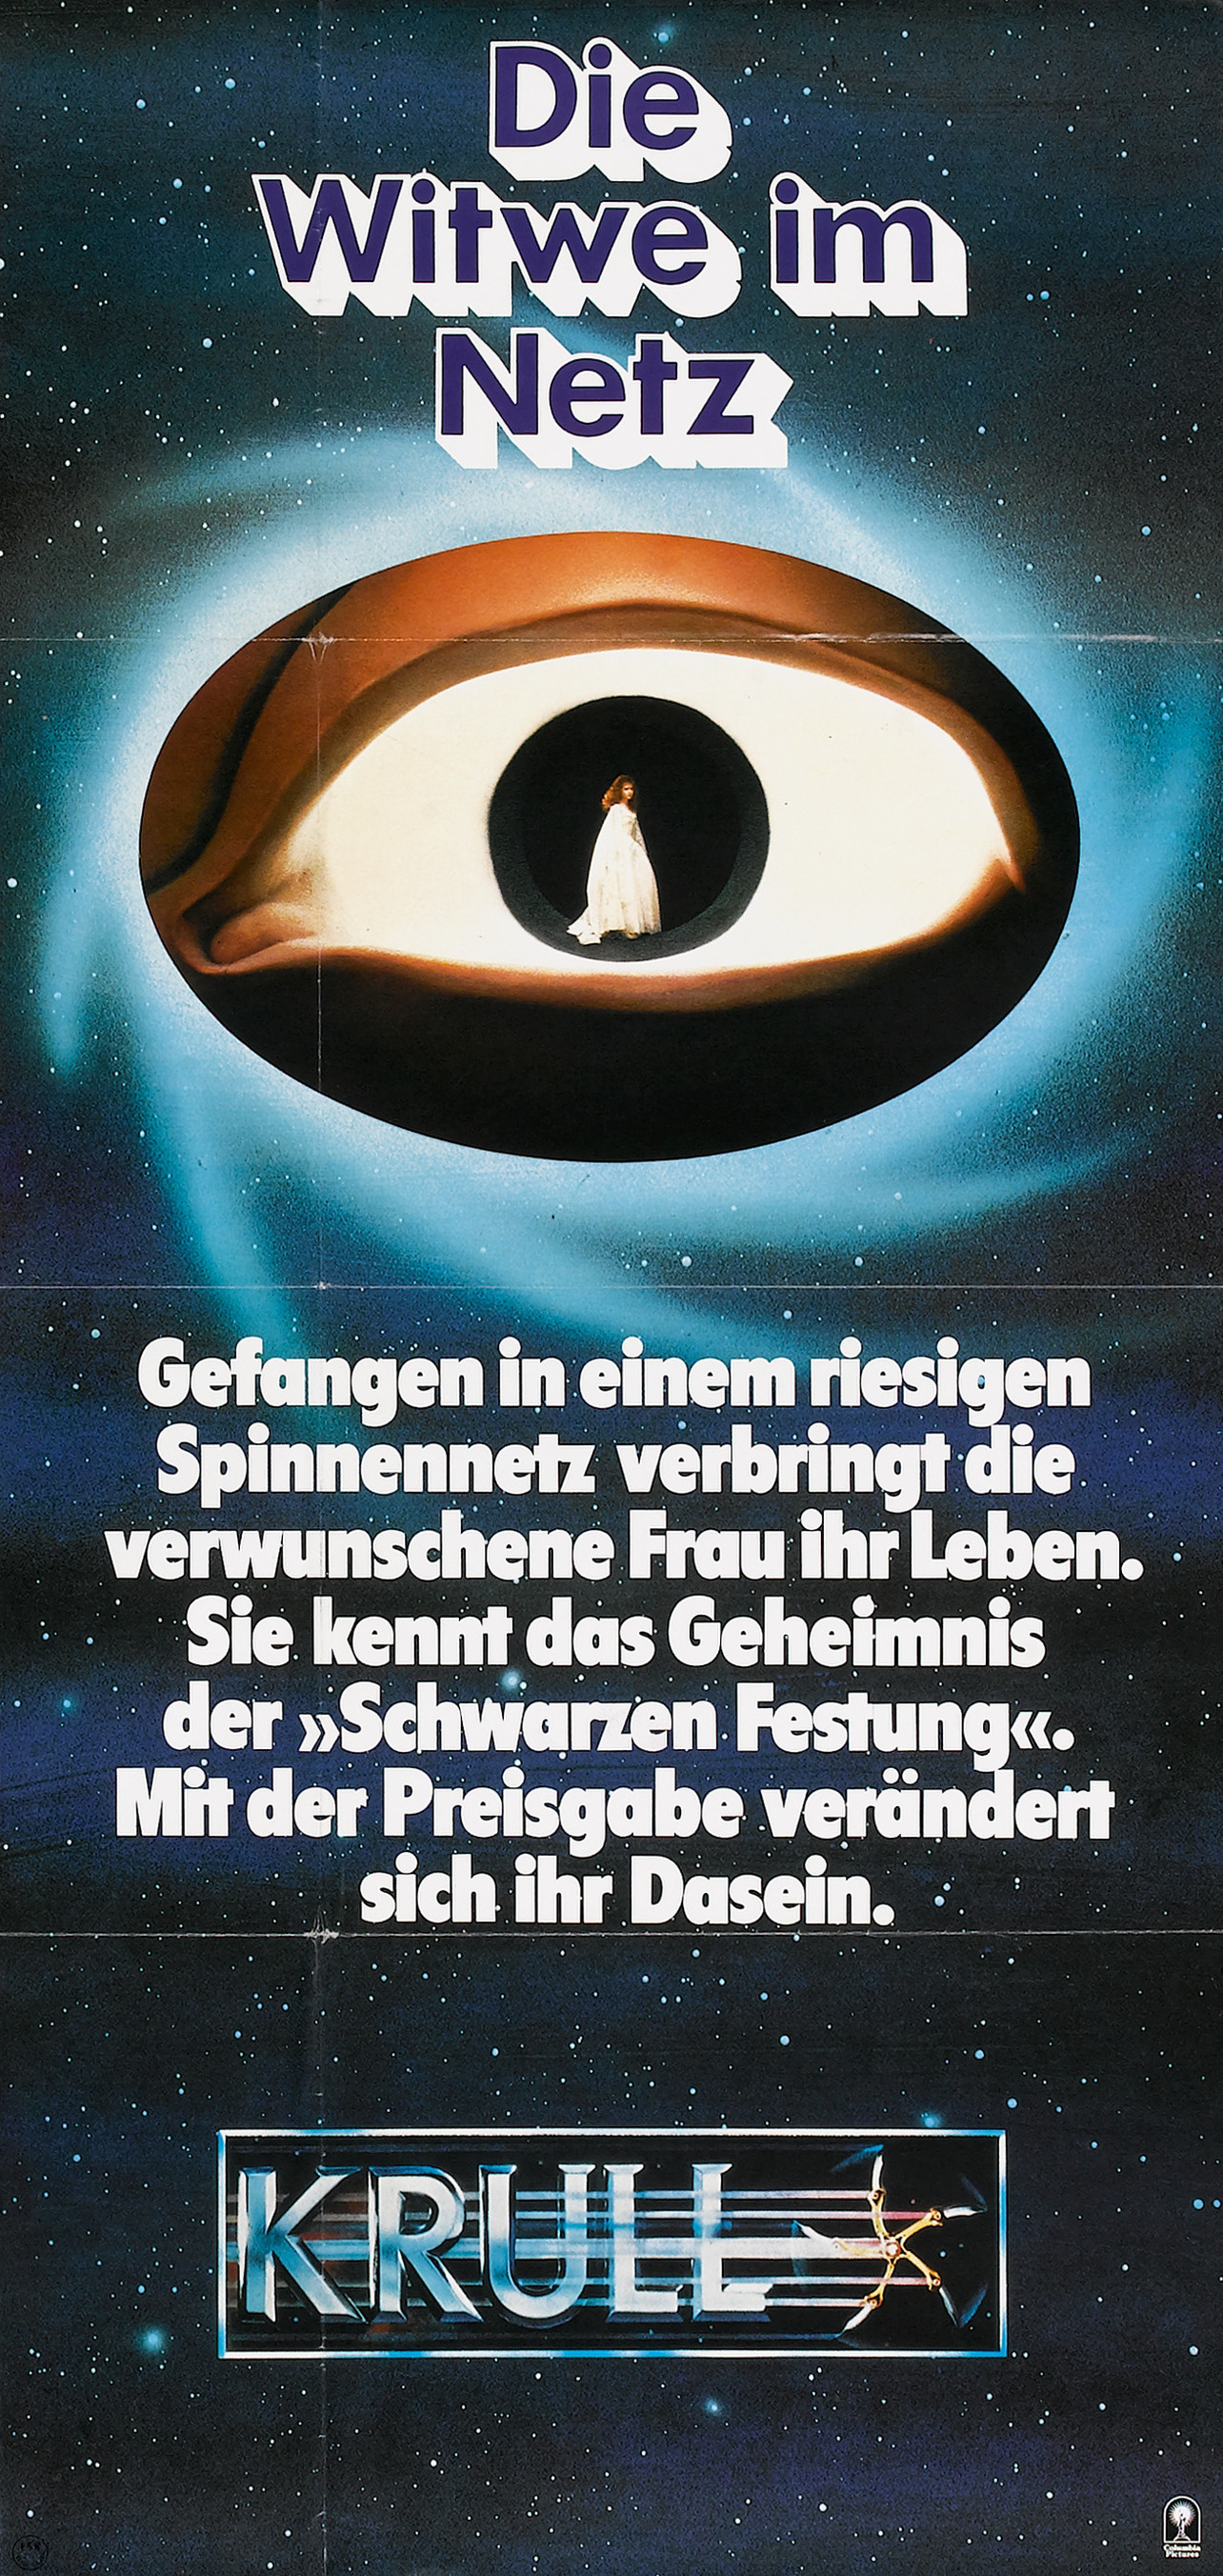 Mega Sized Movie Poster Image for Krull (#5 of 5)